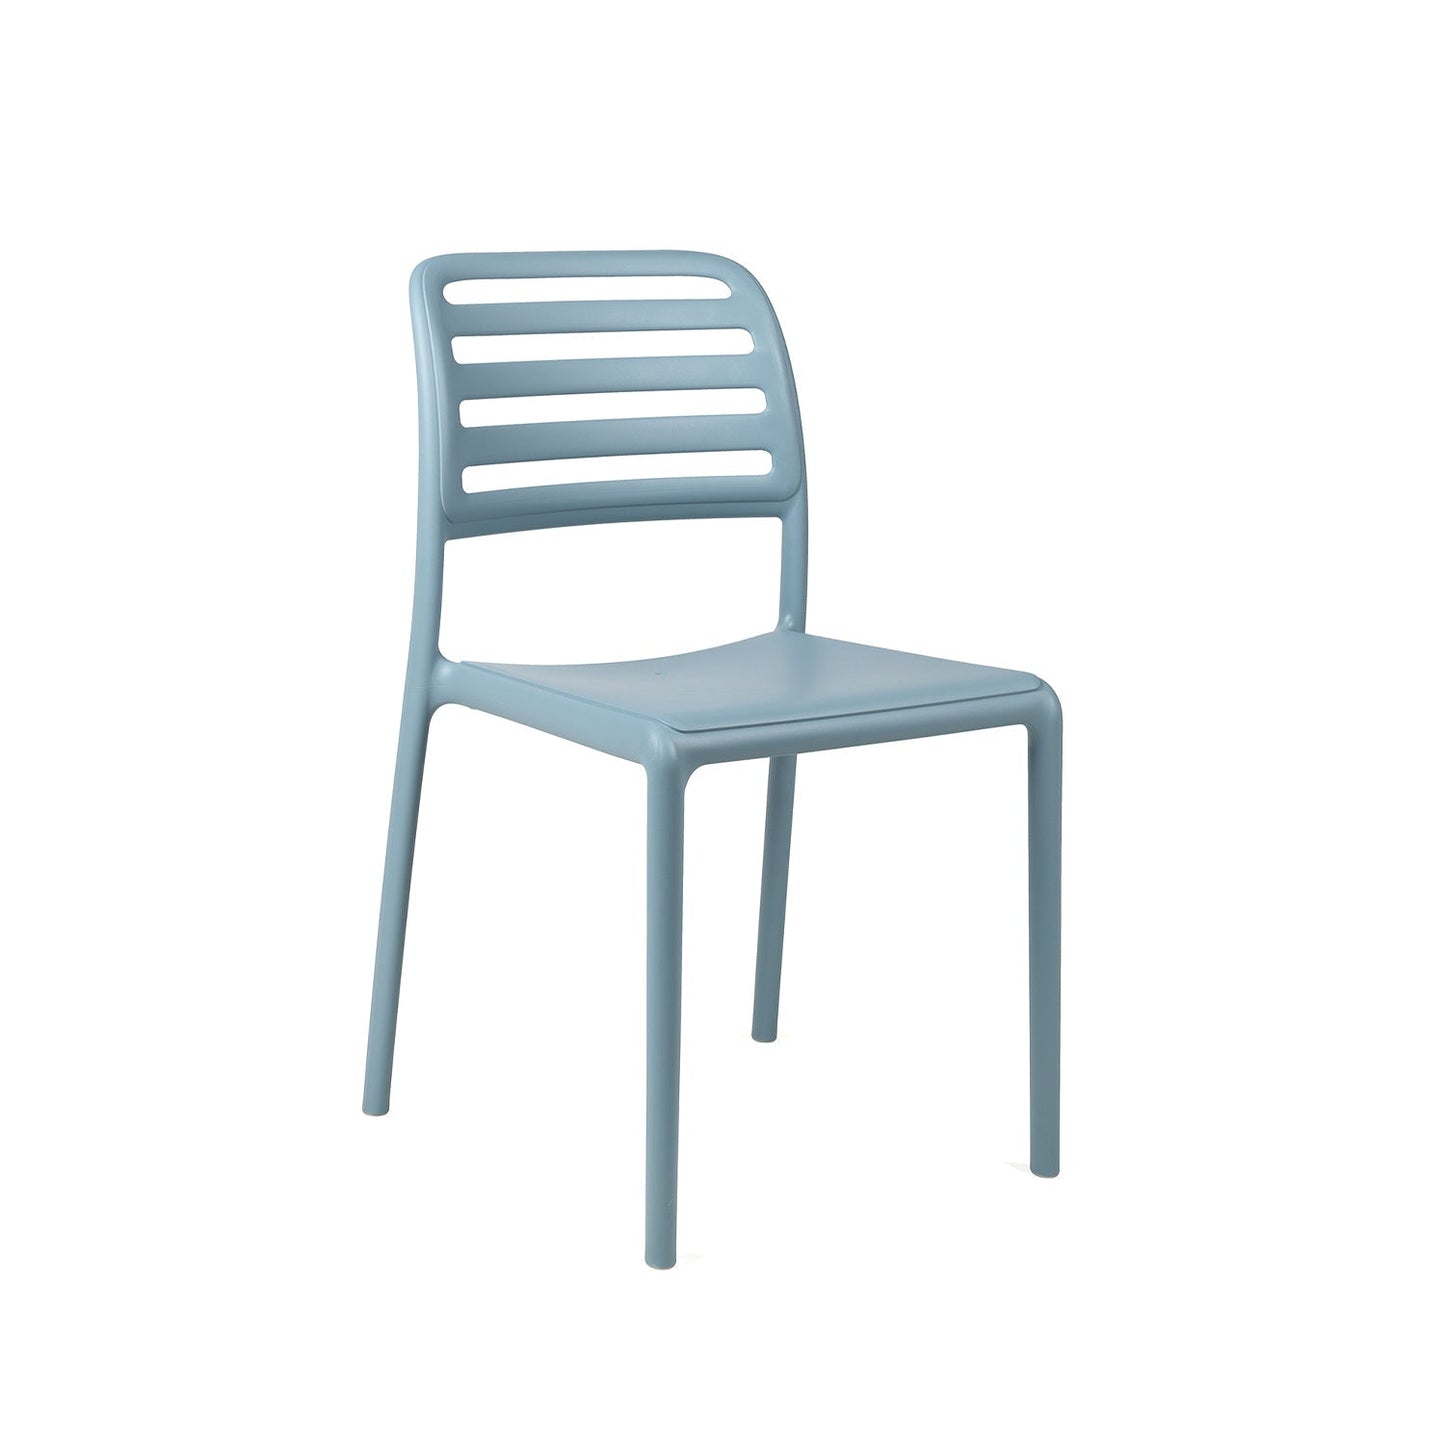 Costa Bistro Garden Chair By Nardi - Powder Blue